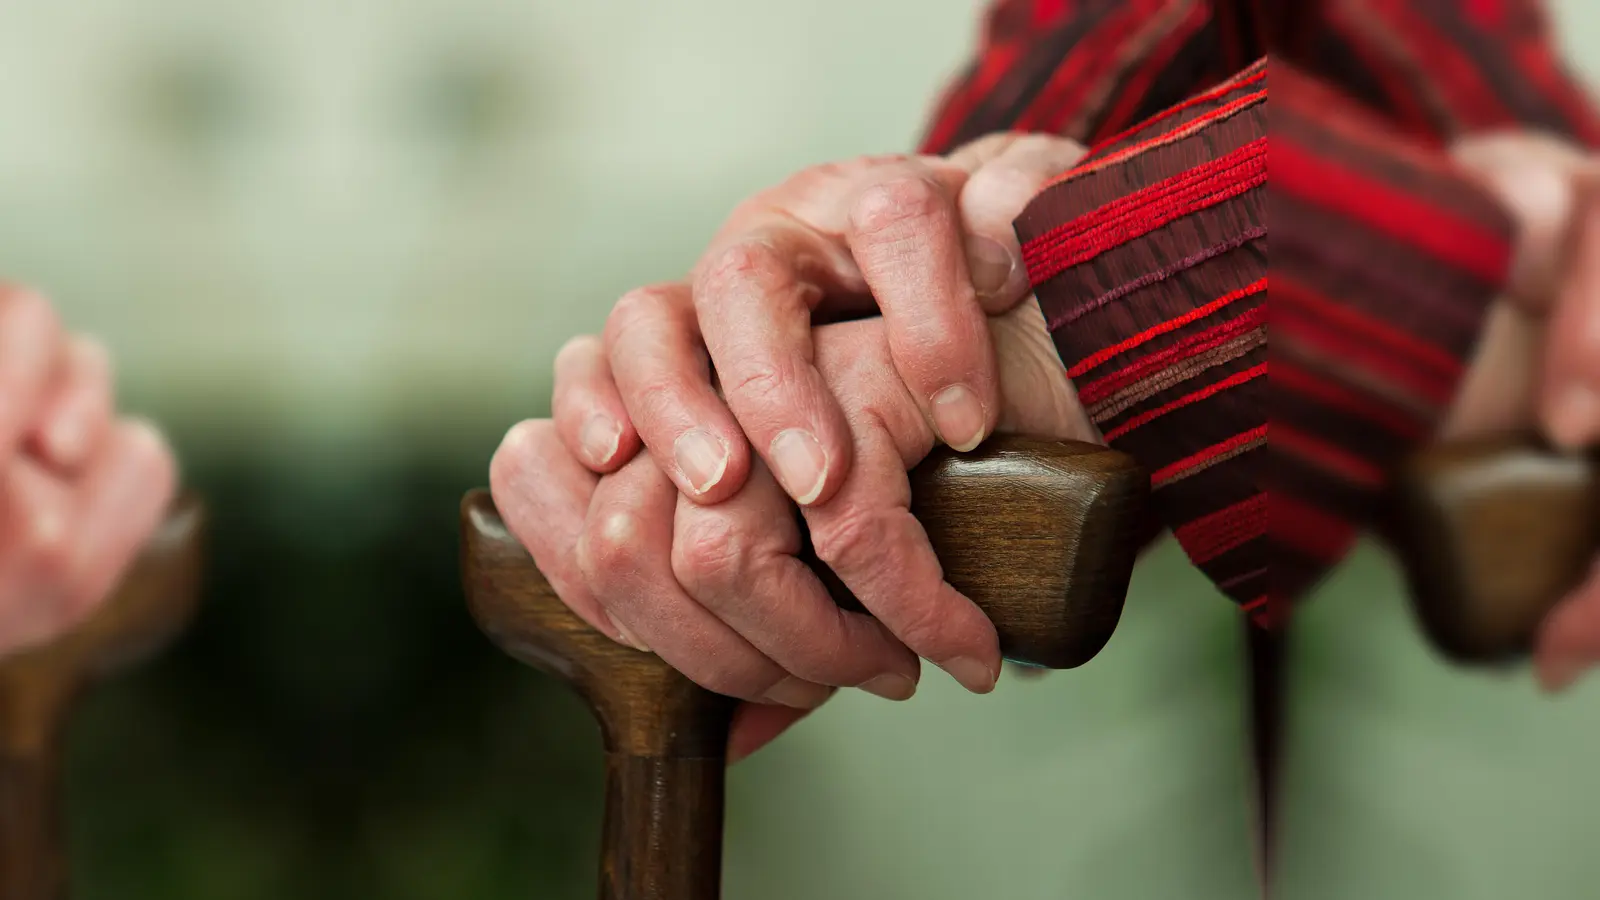 Ehrenamtliche Helfer gegen die Alterseinsamkeit werden von der Caritas gesucht. Sie begleiten Senioren zu Kultur- oder Sportveranstaltungen.  (Foto: Erwin Wodicka - Colourbox.com)